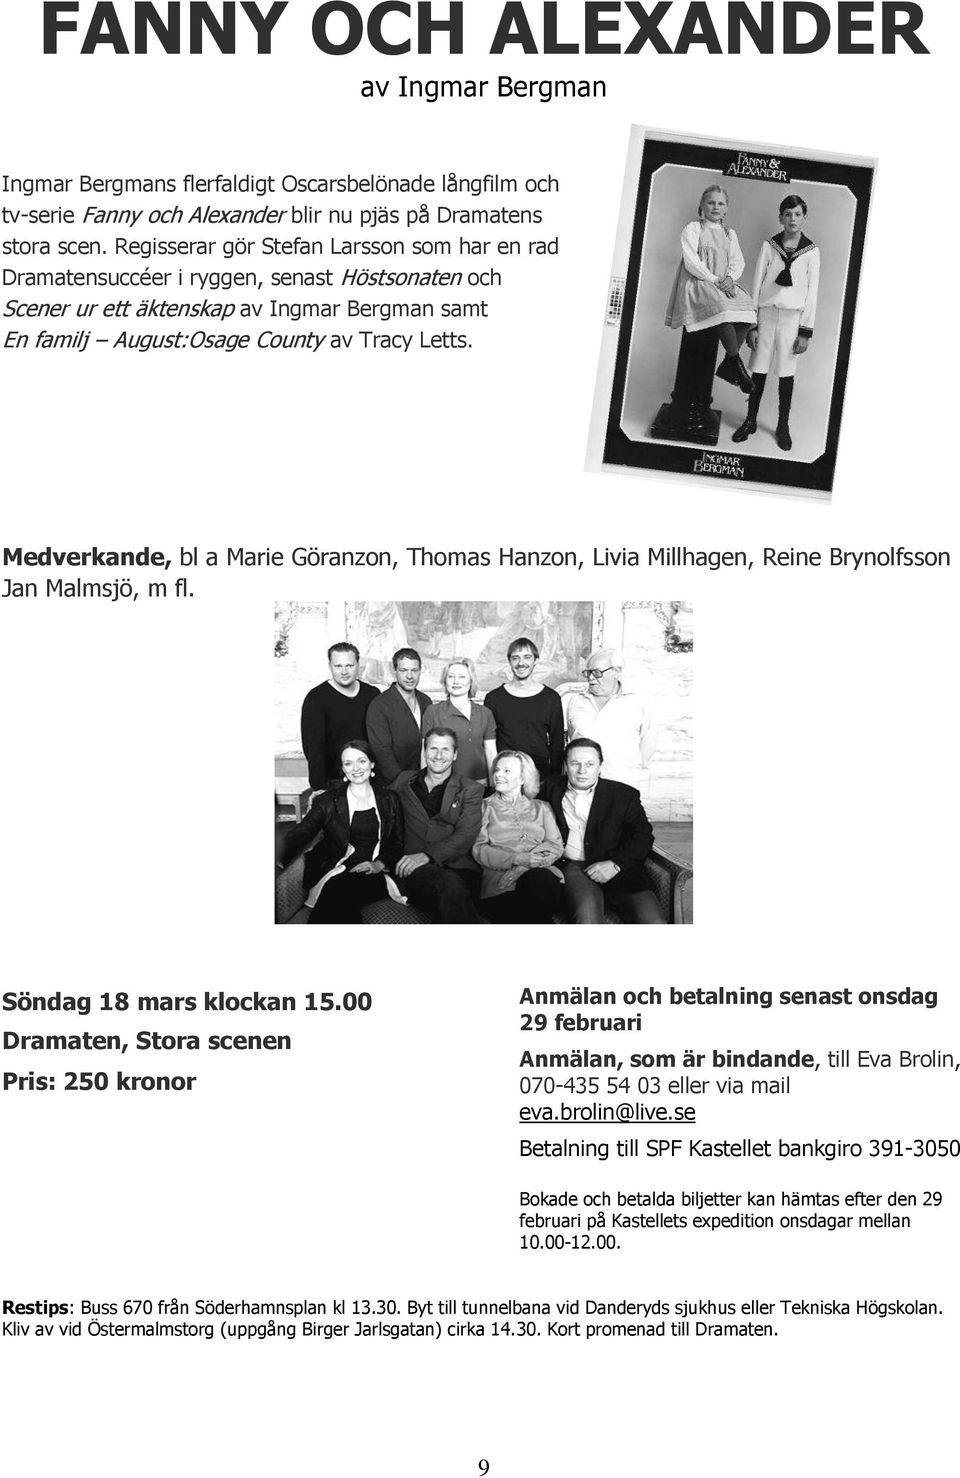 Medverkande, bl a Marie Göranzon, Thomas Hanzon, Livia Millhagen, Reine Brynolfsson Jan Malmsjö, m fl. Söndag 18 mars klockan 15.